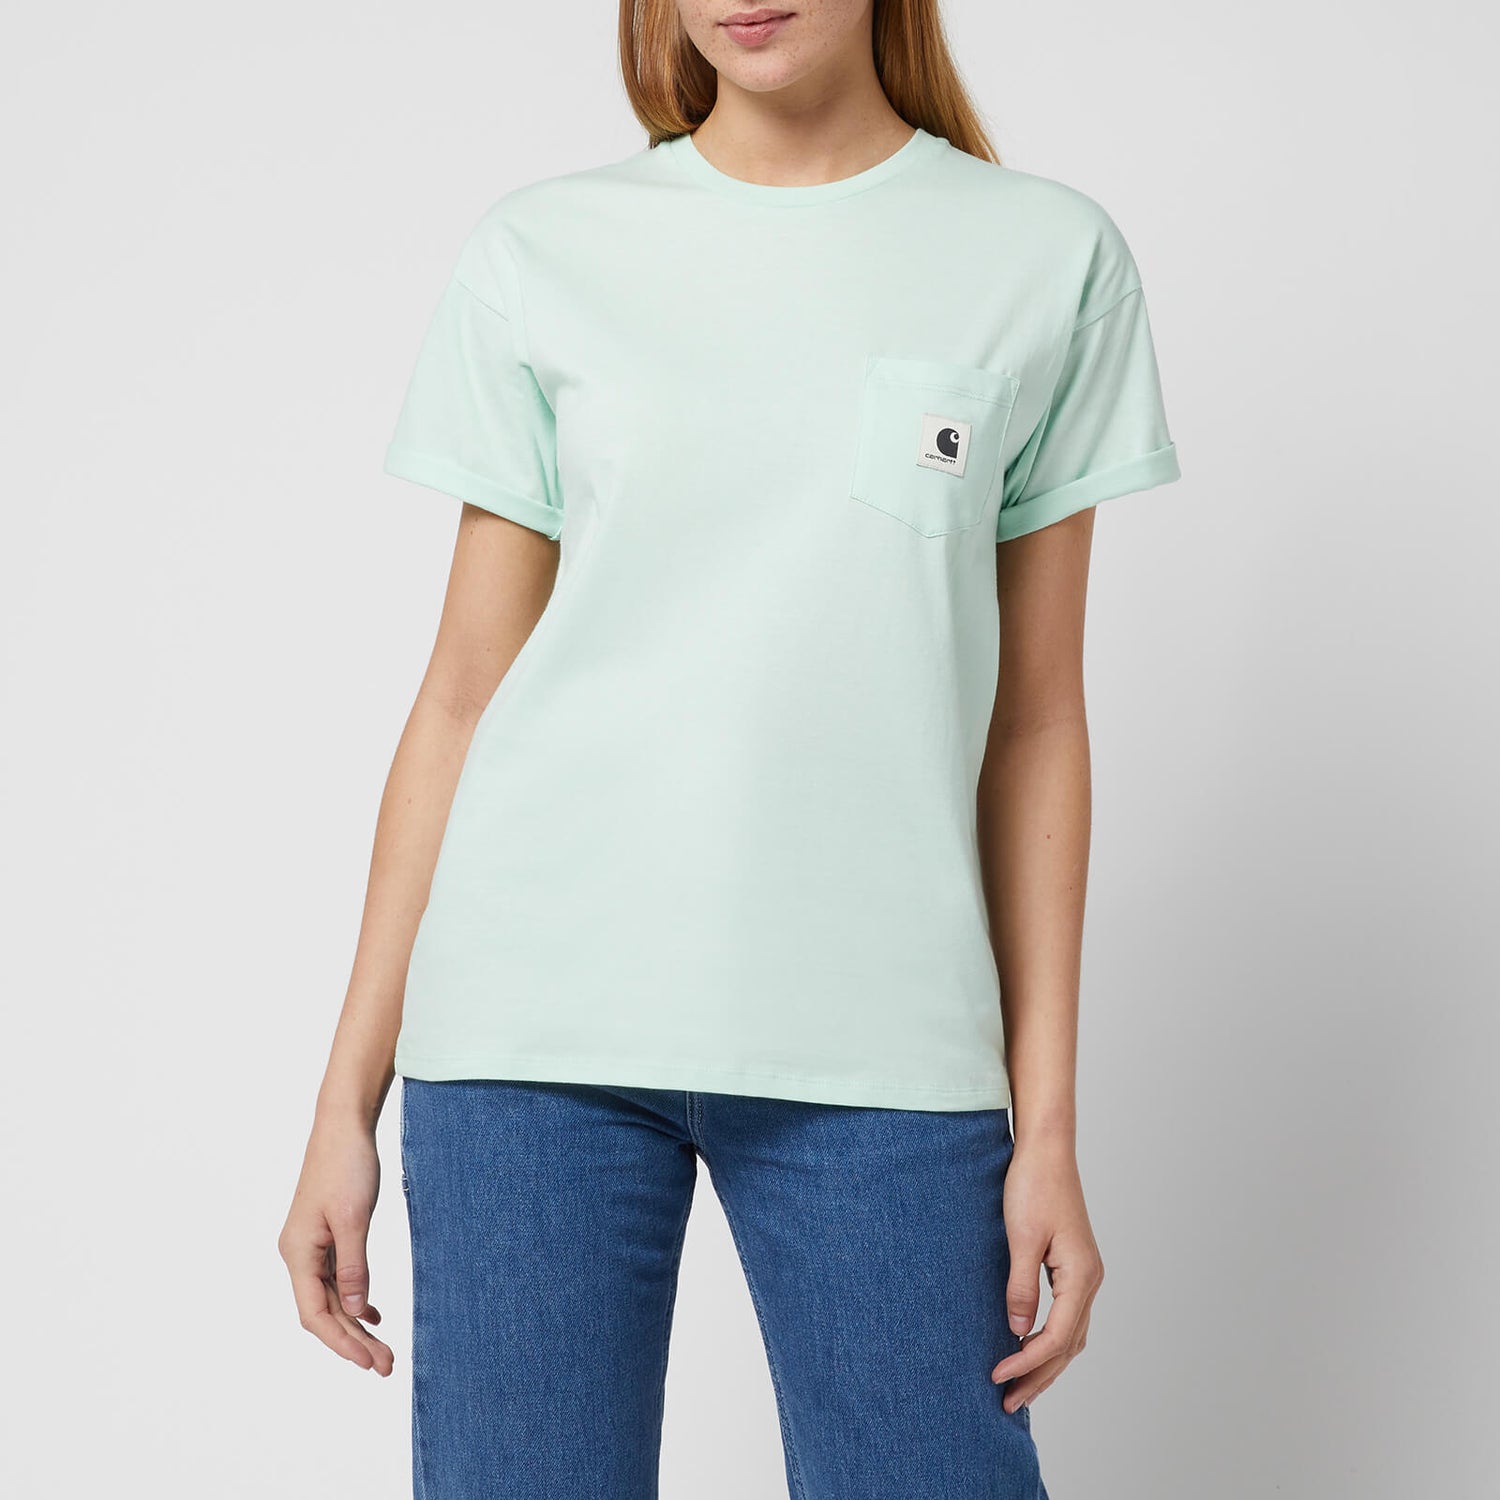 Carhartt WIP Women's S/S Pocket T-Shirt - Pale Spearmint - XS